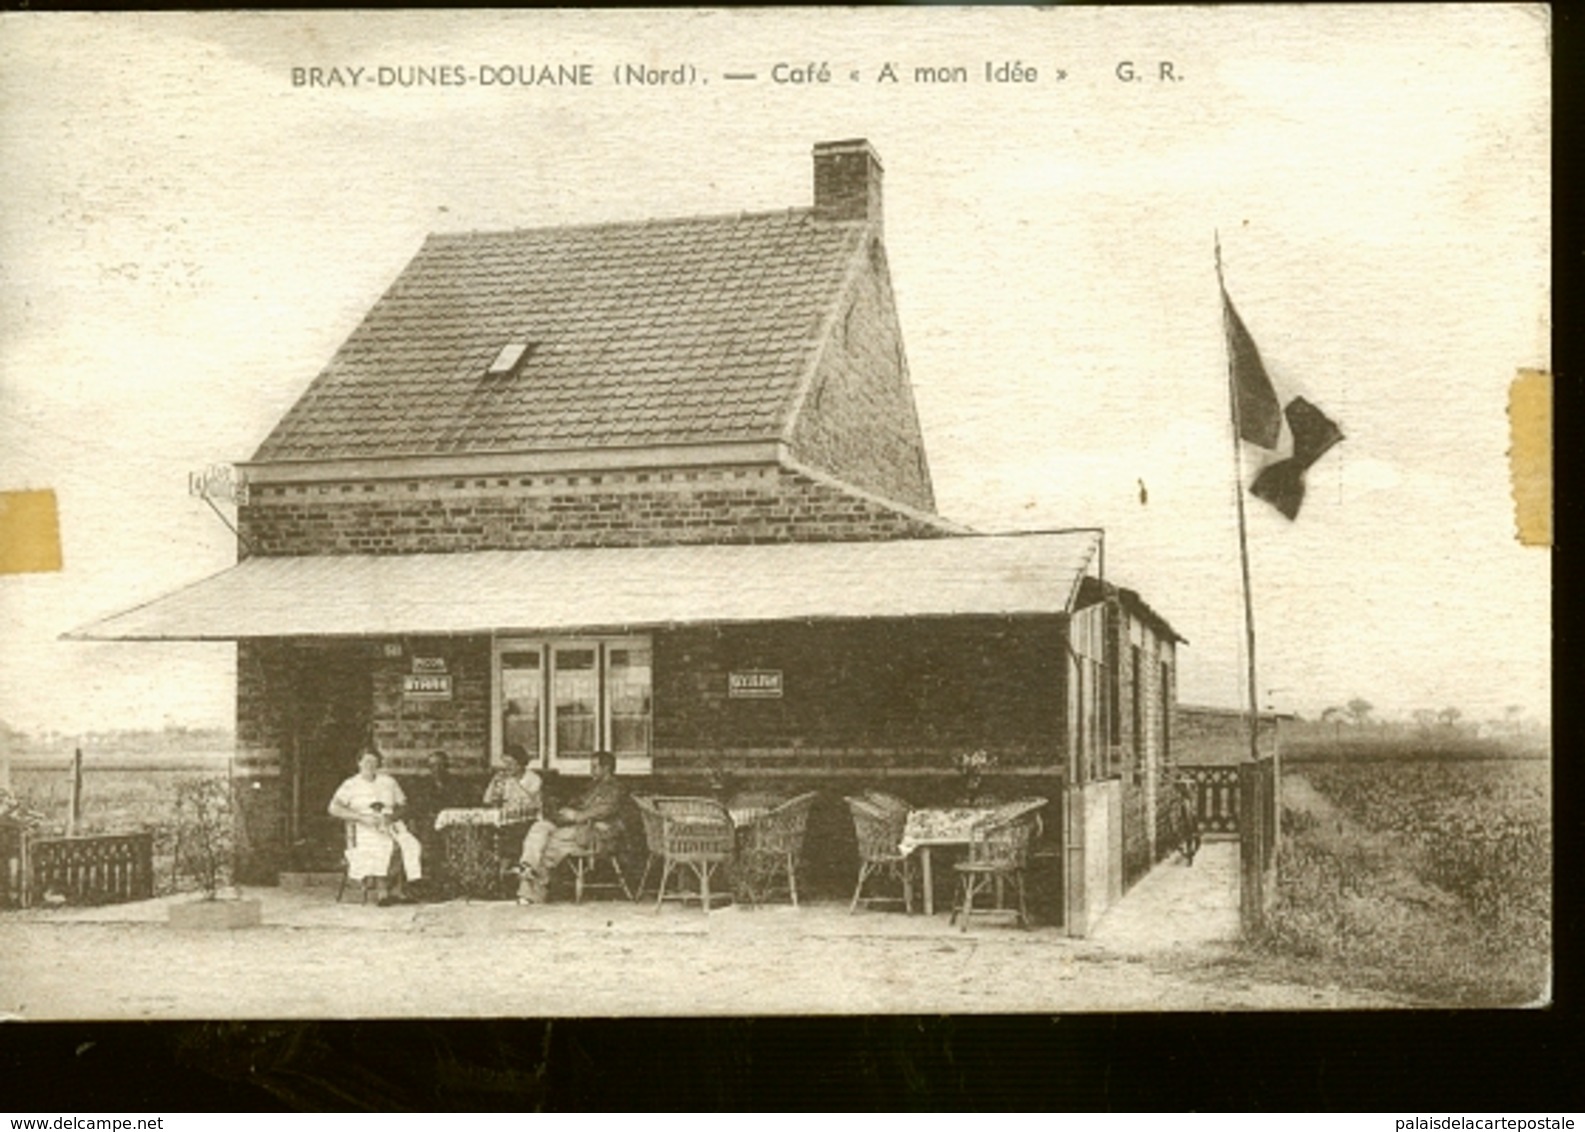 BRAY DUNES CAFE - Bray-Dunes